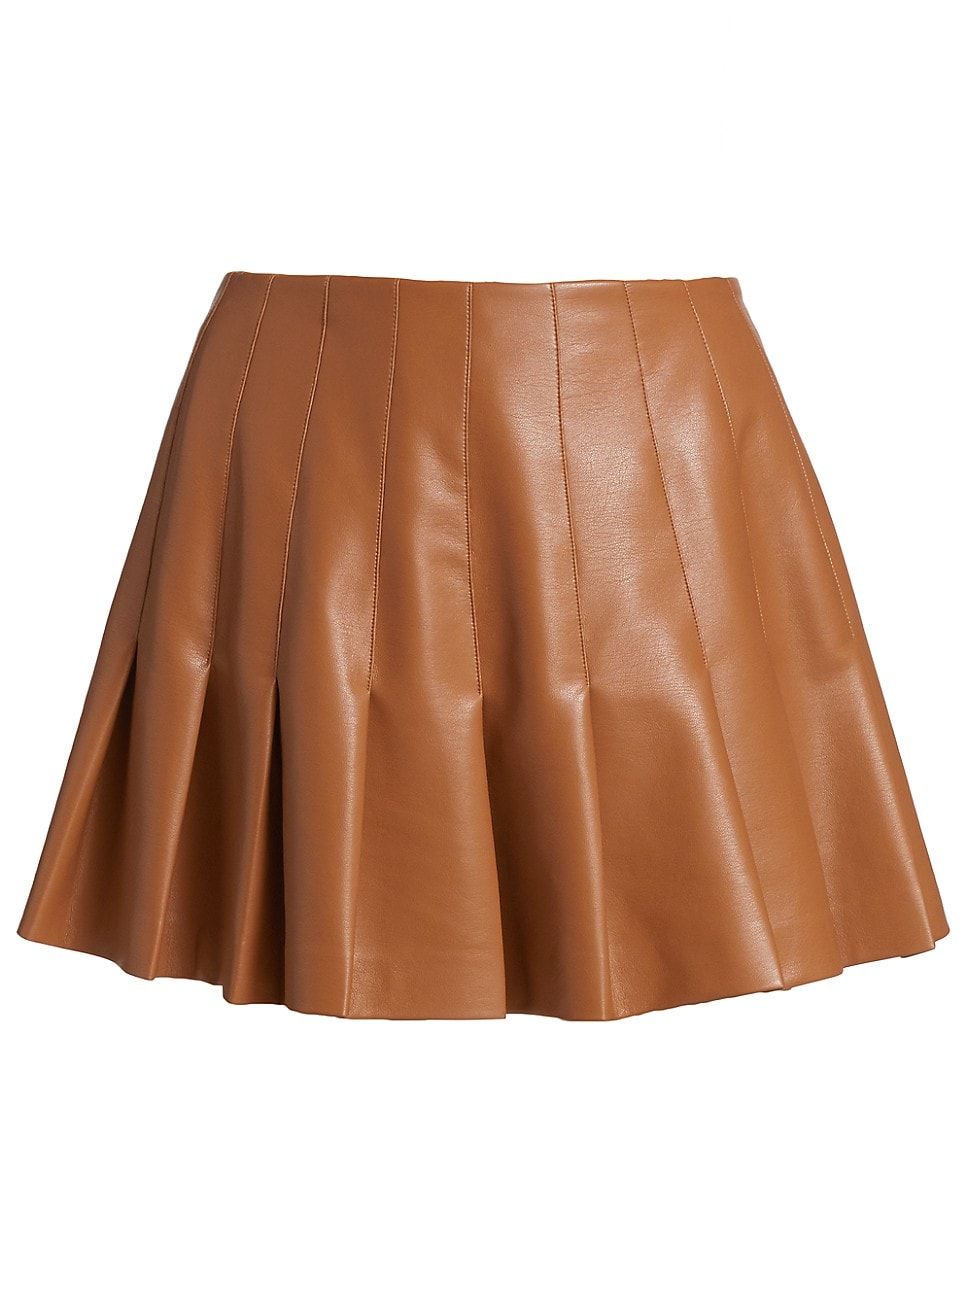 Alice + Olivia Carter Vegan Leather Pleated Skirt | Saks Fifth Avenue